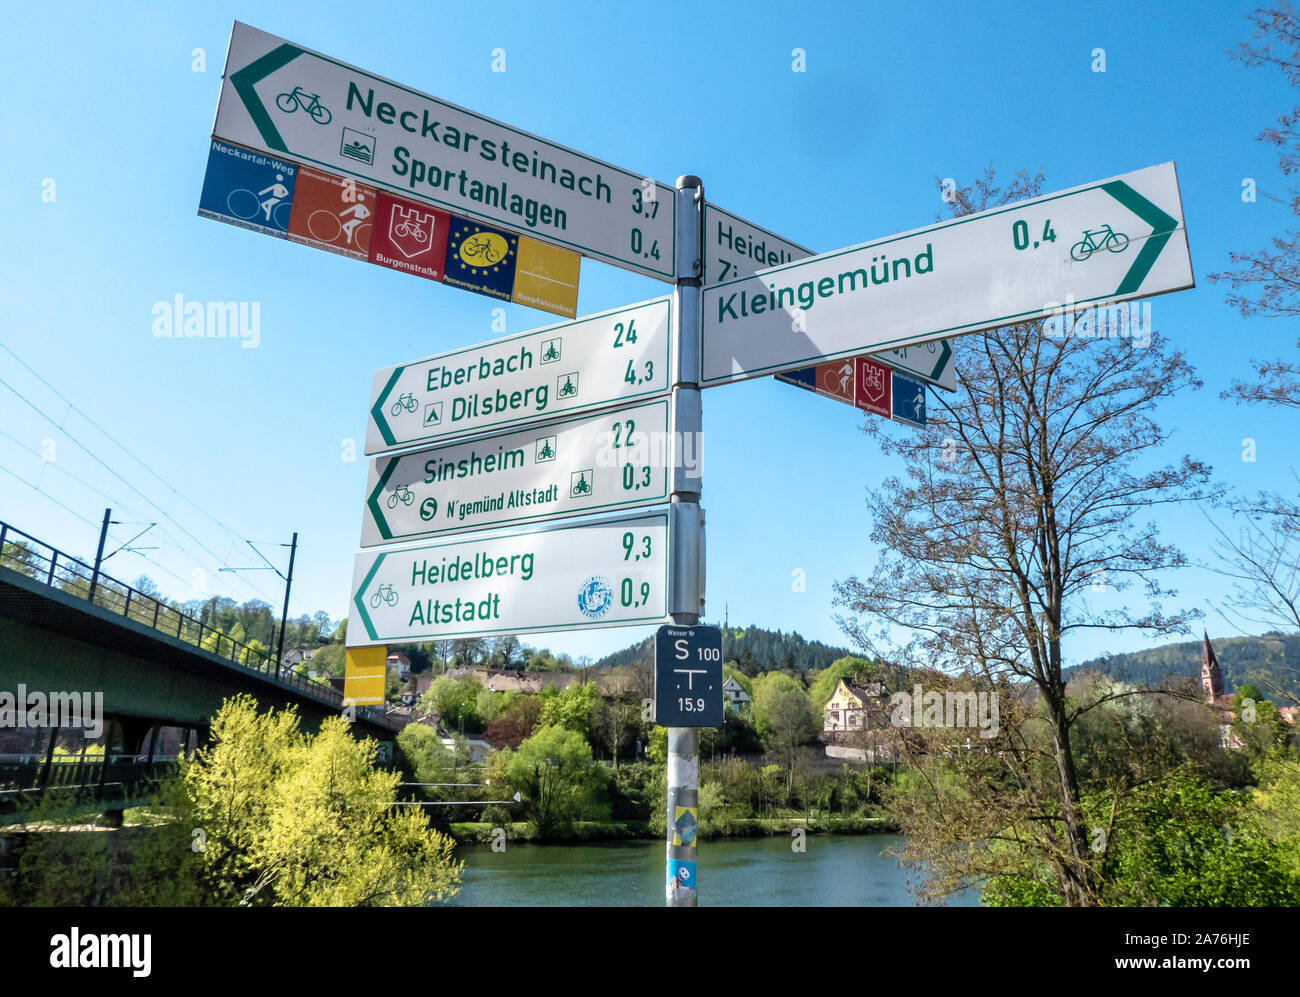 Neckargemünd, Deutschland - 21 April, 2019: touristische Beschilderung Entfernungen zu beliebten Reisezielen für Wanderer und Radfahrer Stockfoto